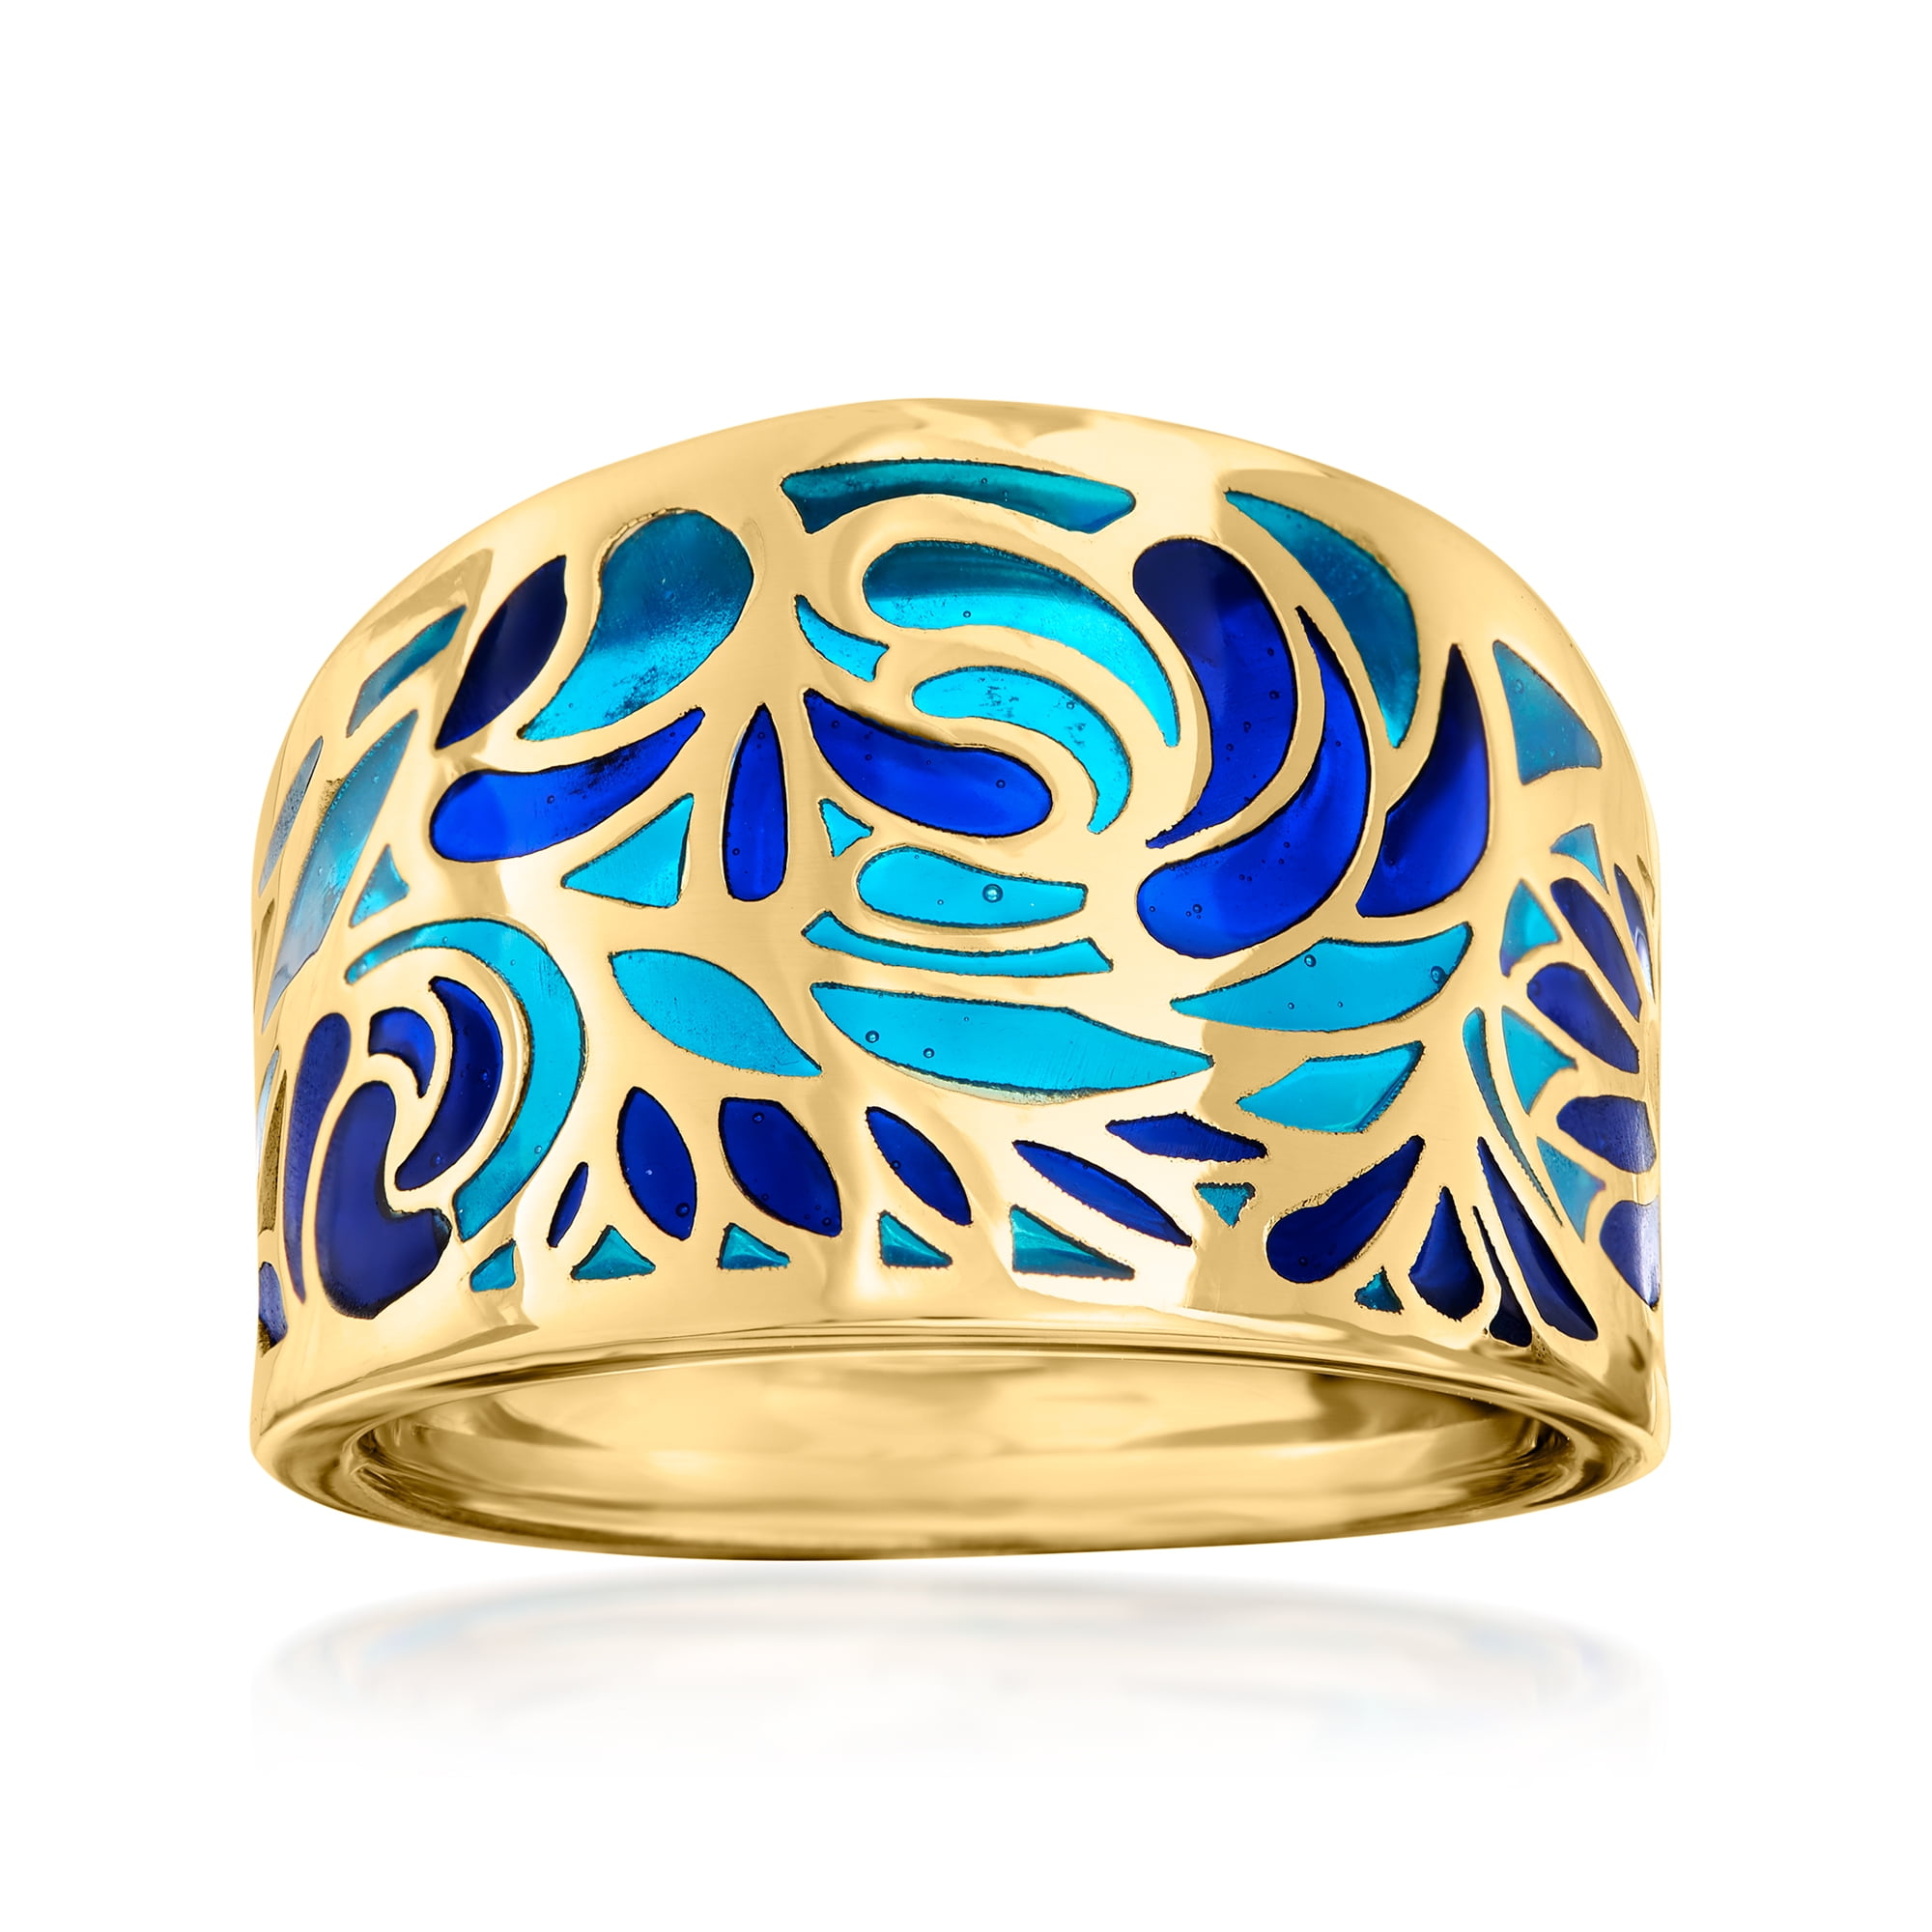 Ross-Simons Italian Blue Enamel Ring in 14kt Yellow Gold for Female ...